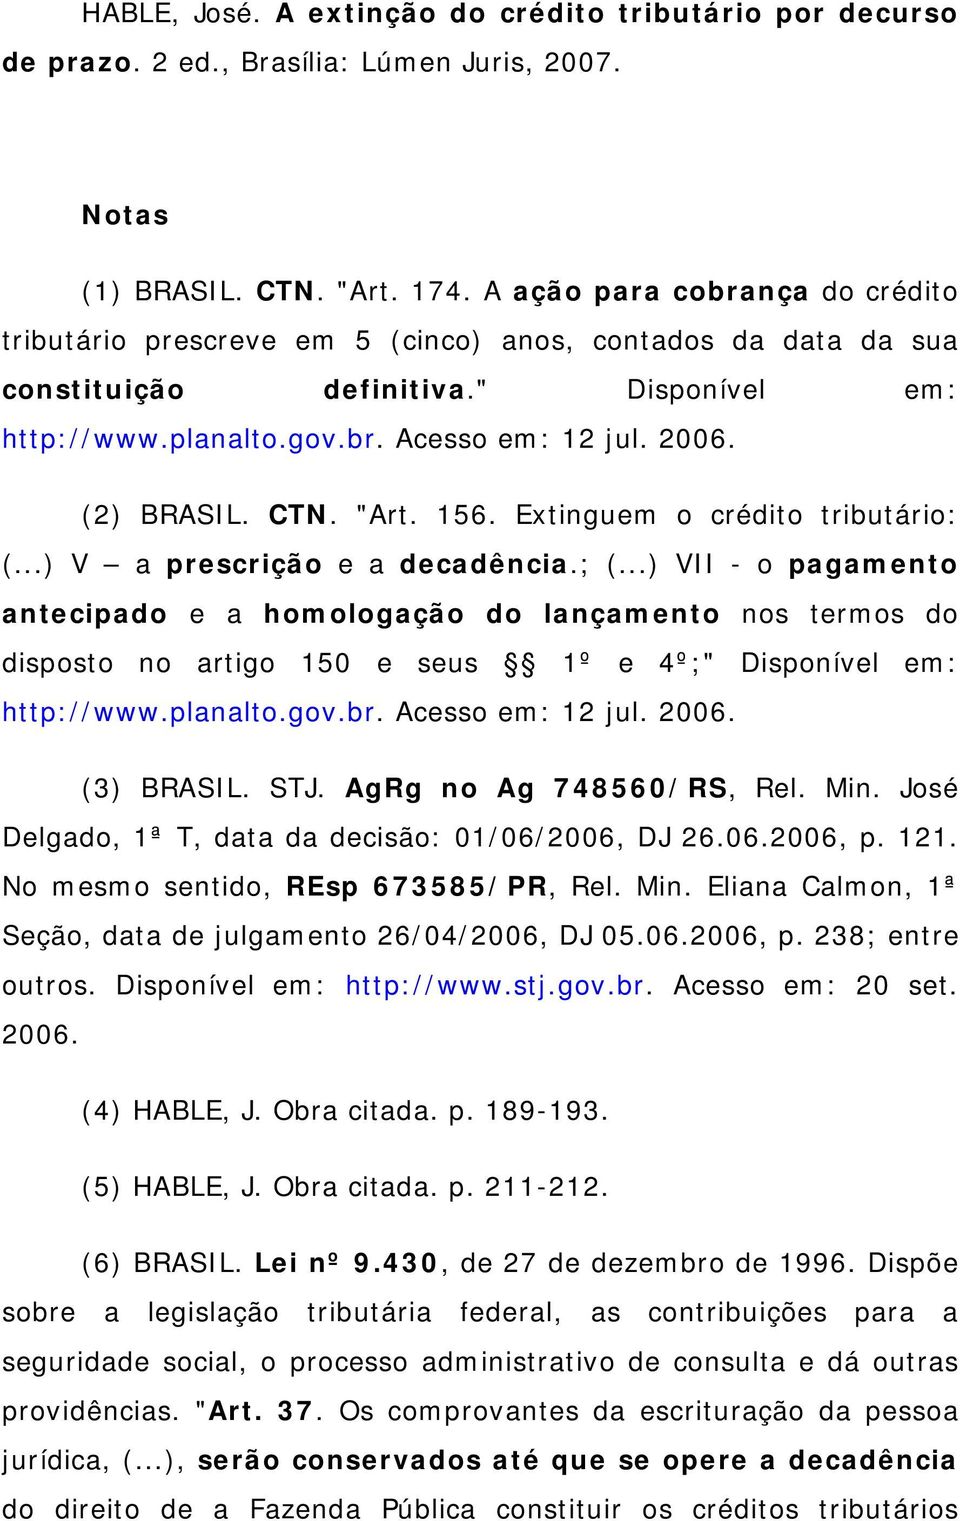 (2) BRASIL. CTN. "Art. 156. Extinguem o crédito tributário: (...) V a prescrição e a decadência.; (.